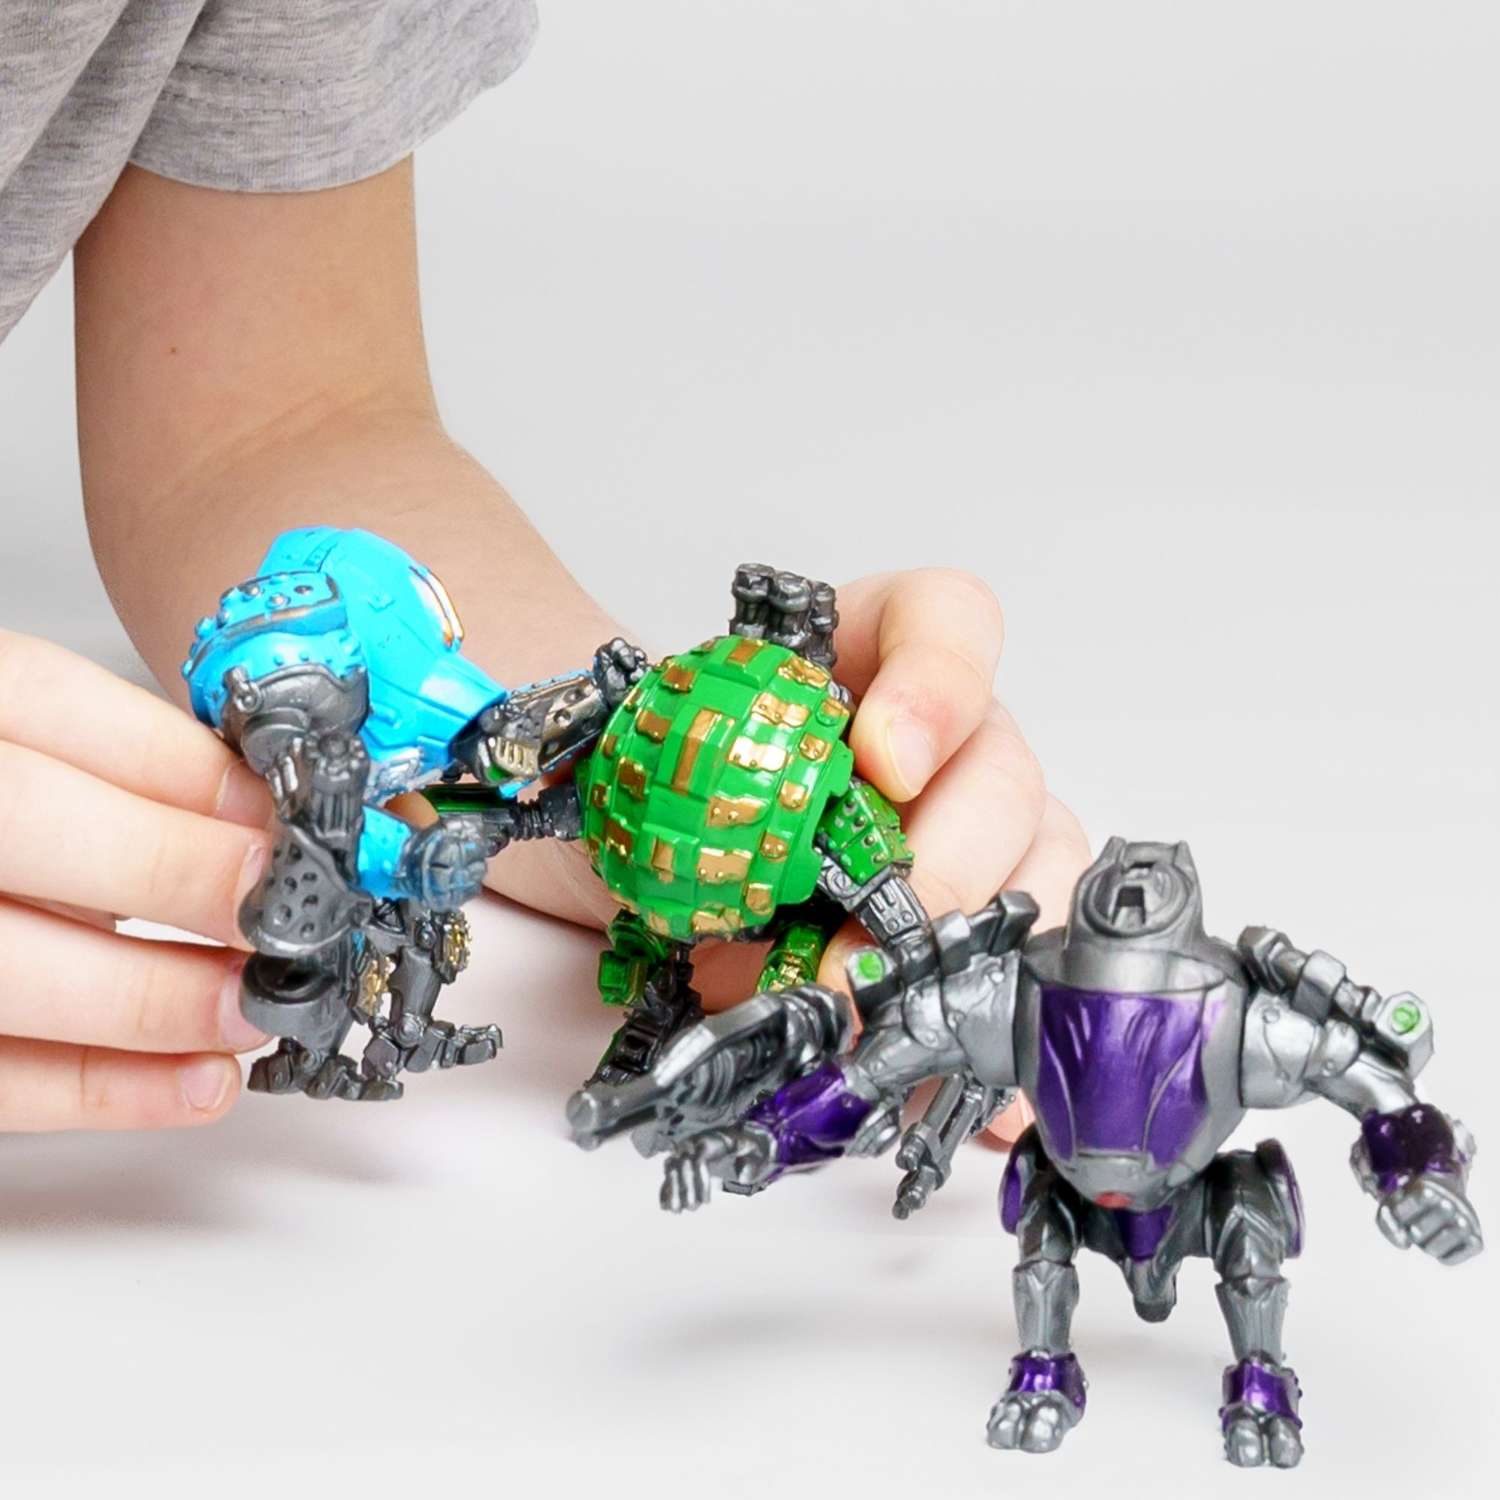 Роботы CyberCode 3 фигурки игрушки для детей развивающие пластиковые коллекционные интересные. 8см - фото 2